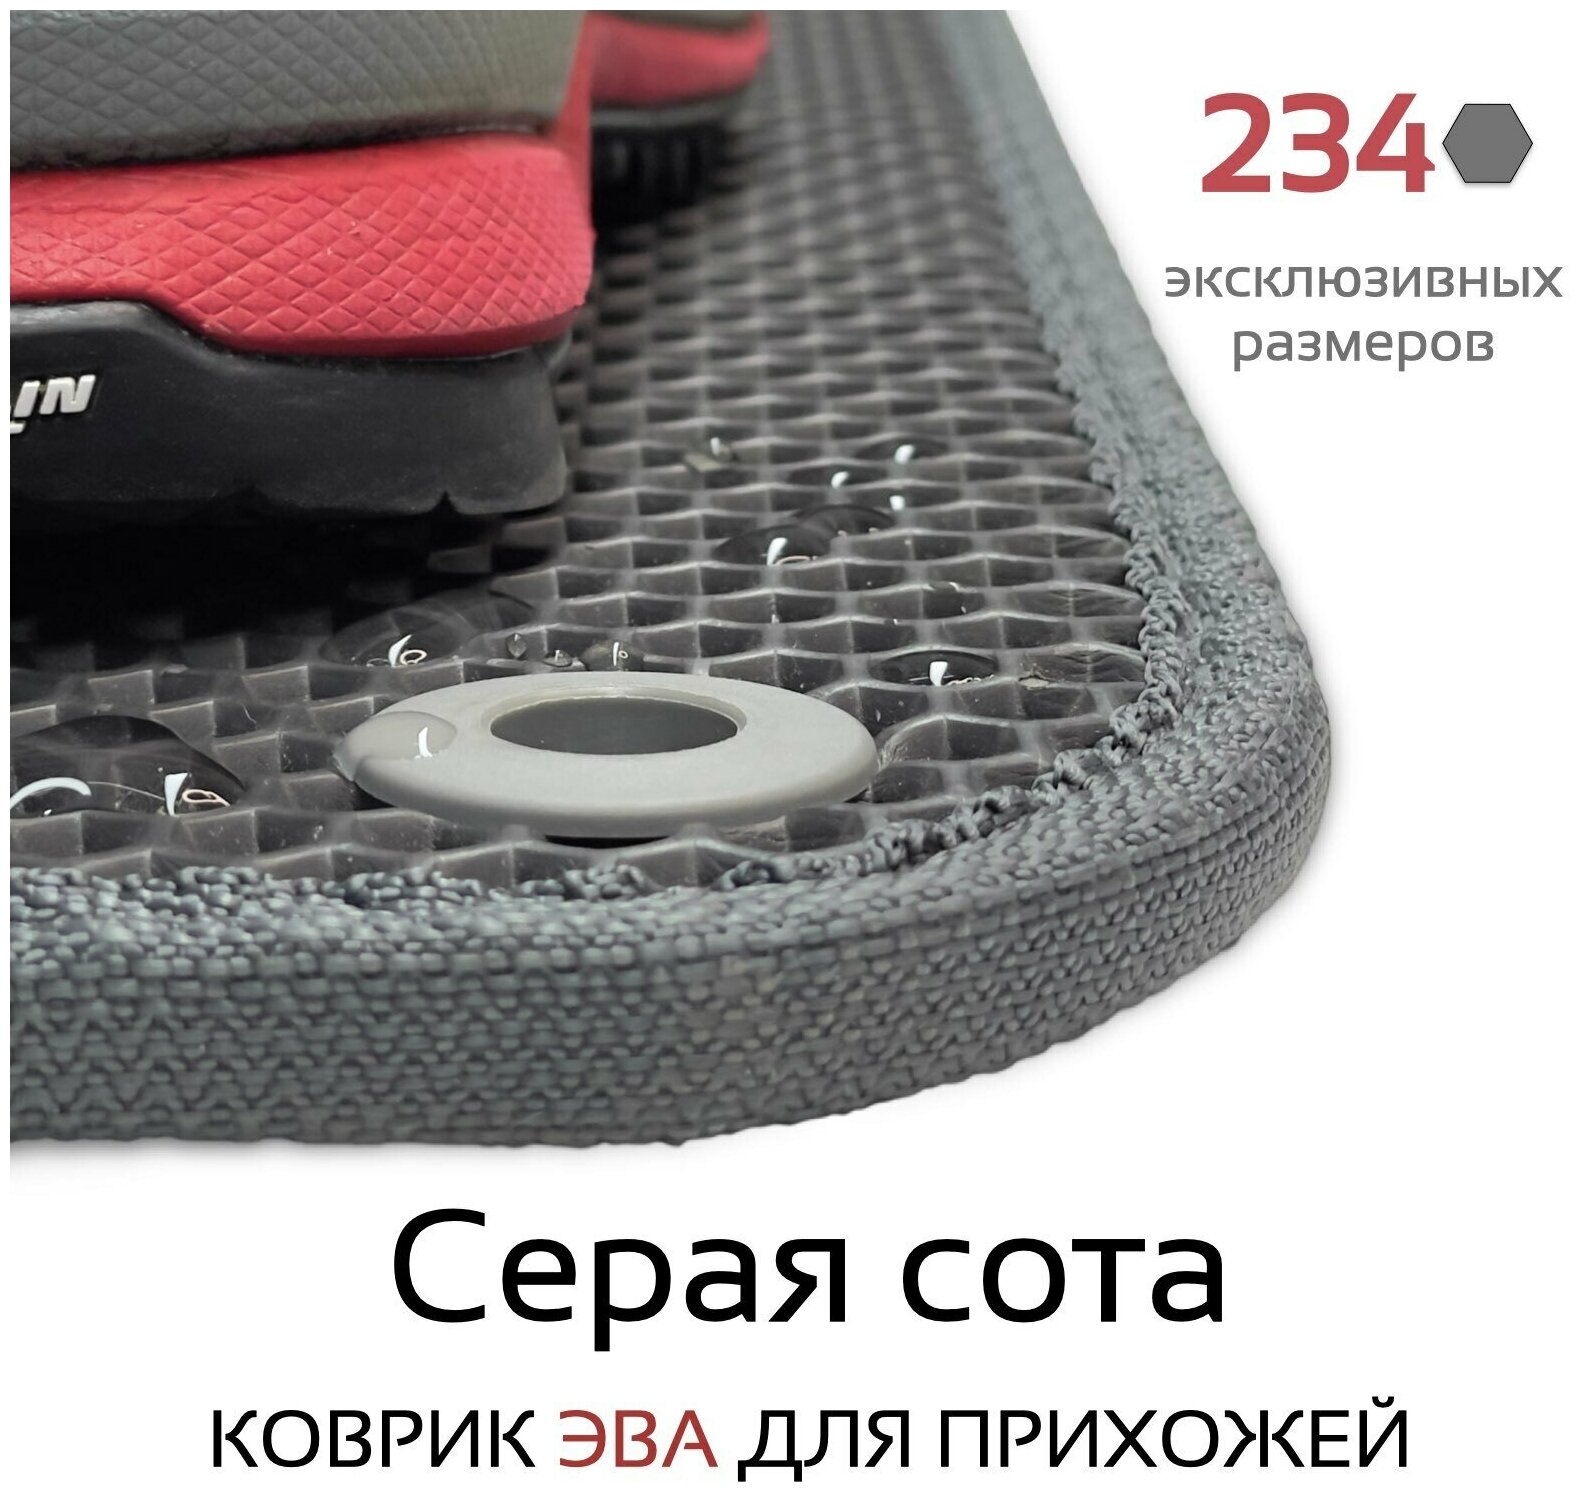 Грязезащитный придверный резиновый коврик в прихожую из EVA для обуви, для ванной, туалета, 0.3 х 0.5 м, темно-серая сота - фотография № 3